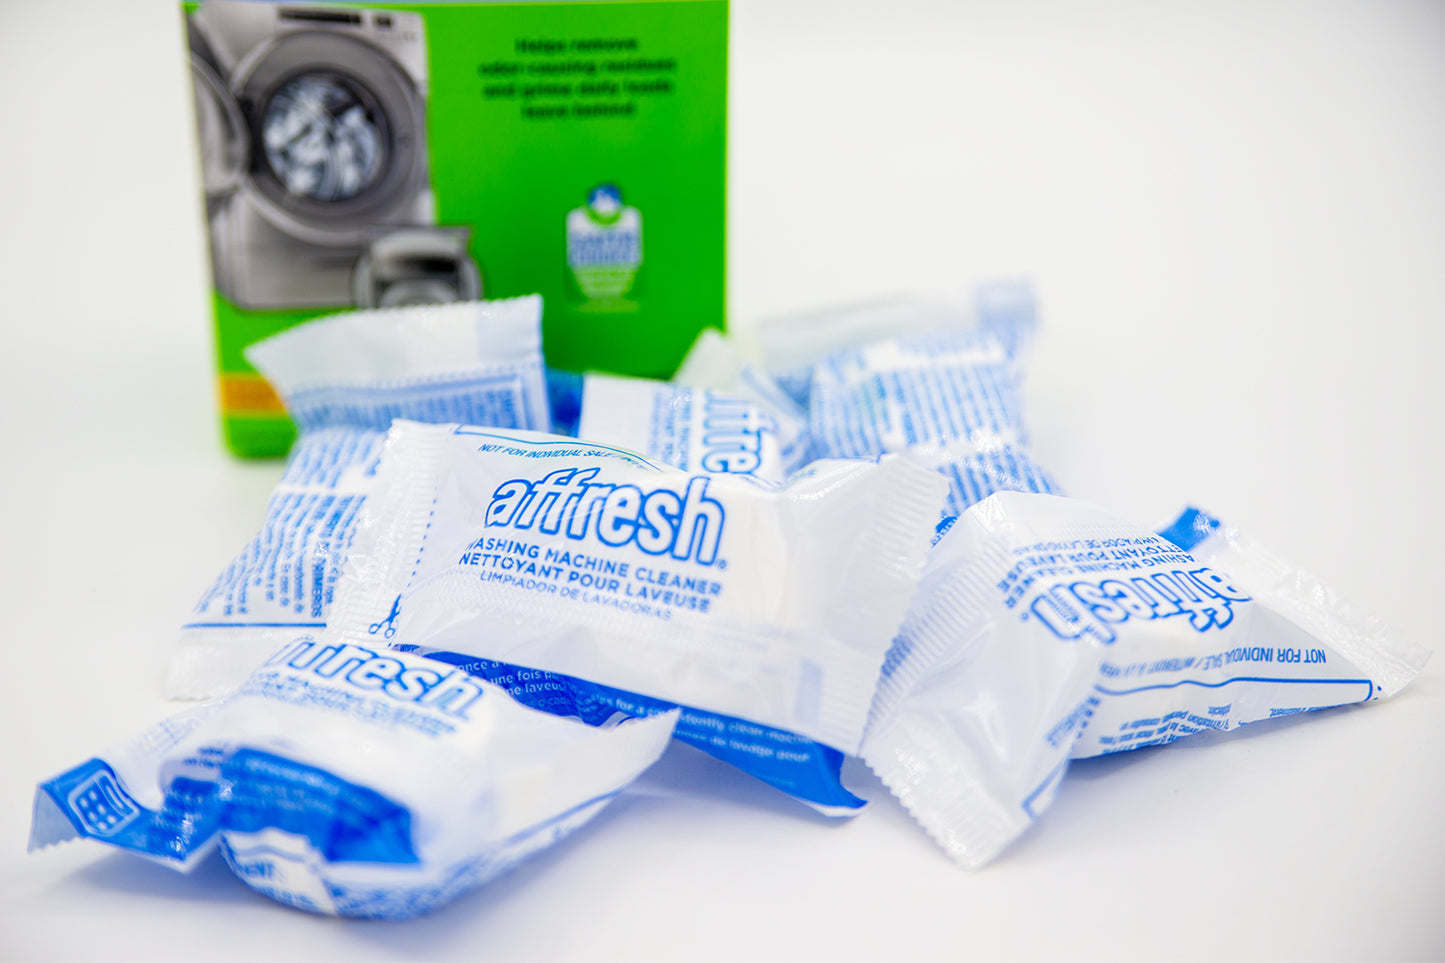 Affresh Washing Machine Cleaner, 6 Tablets, 8.4oz Value Pack